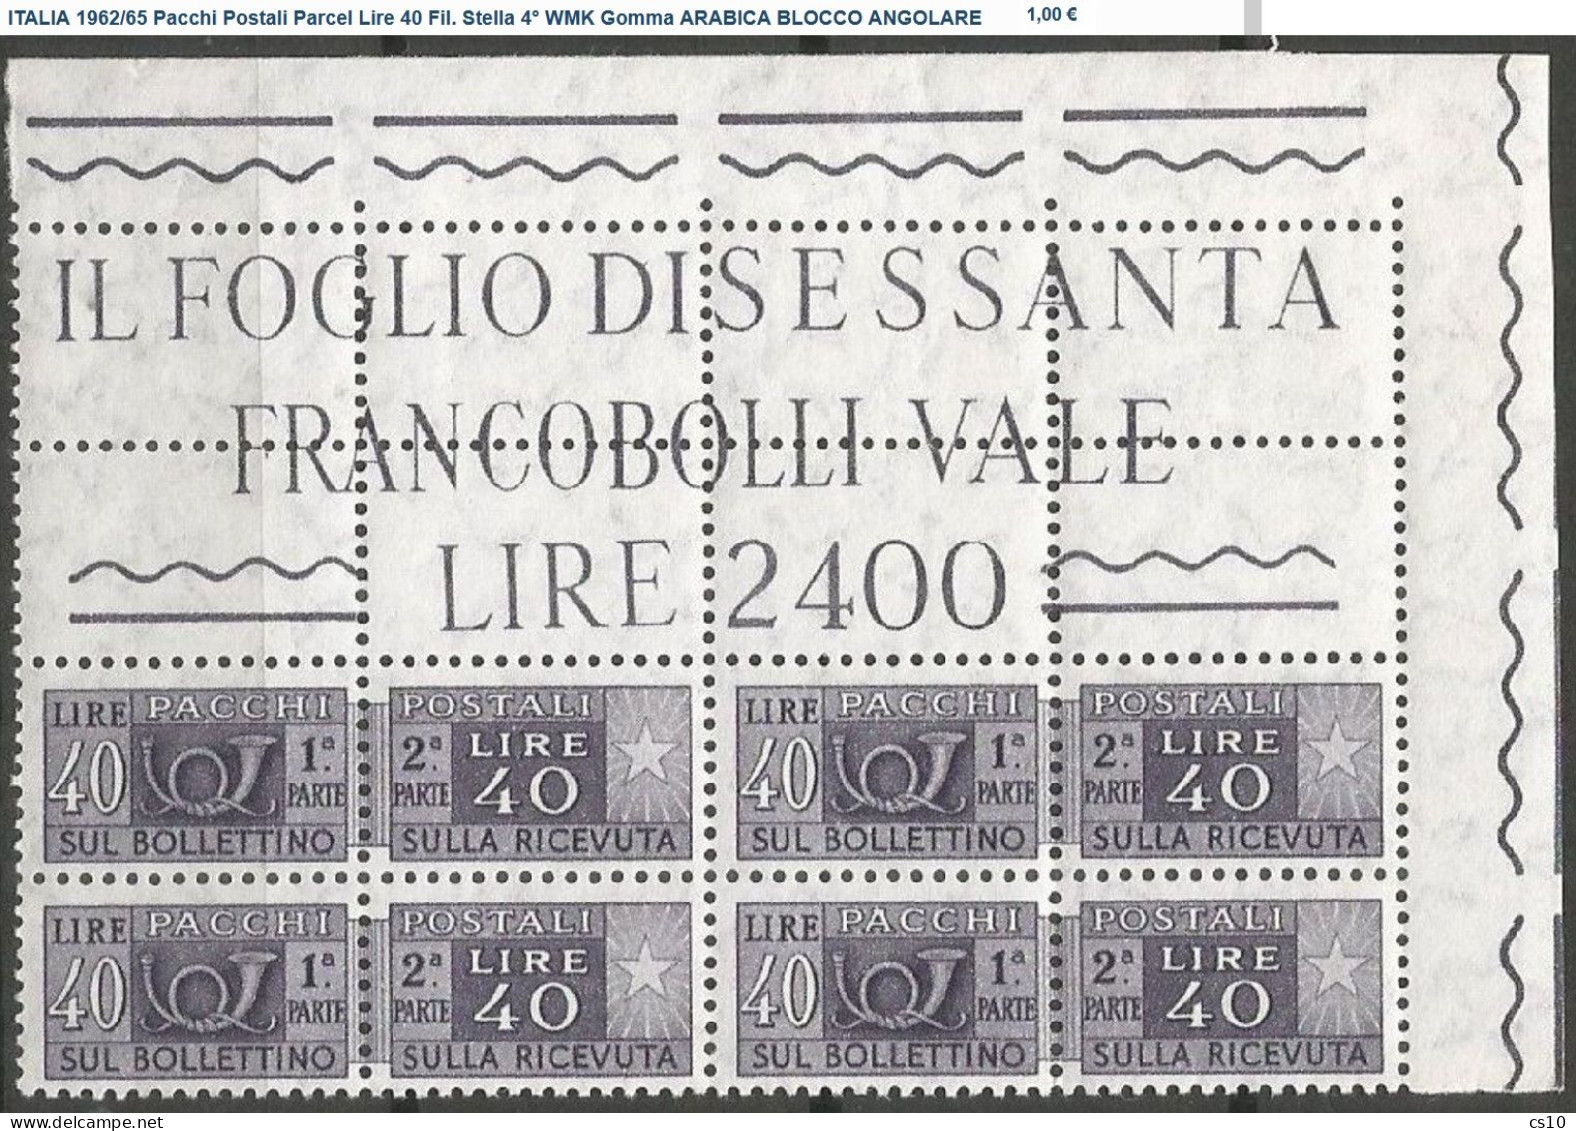 ITALIA Pacchi Postali + BLOCCO ANGOLARE : Lotto 23 DIFFERENTI per Filigrana, Gomma, Stampa, Perforazione Testata Nuovi**